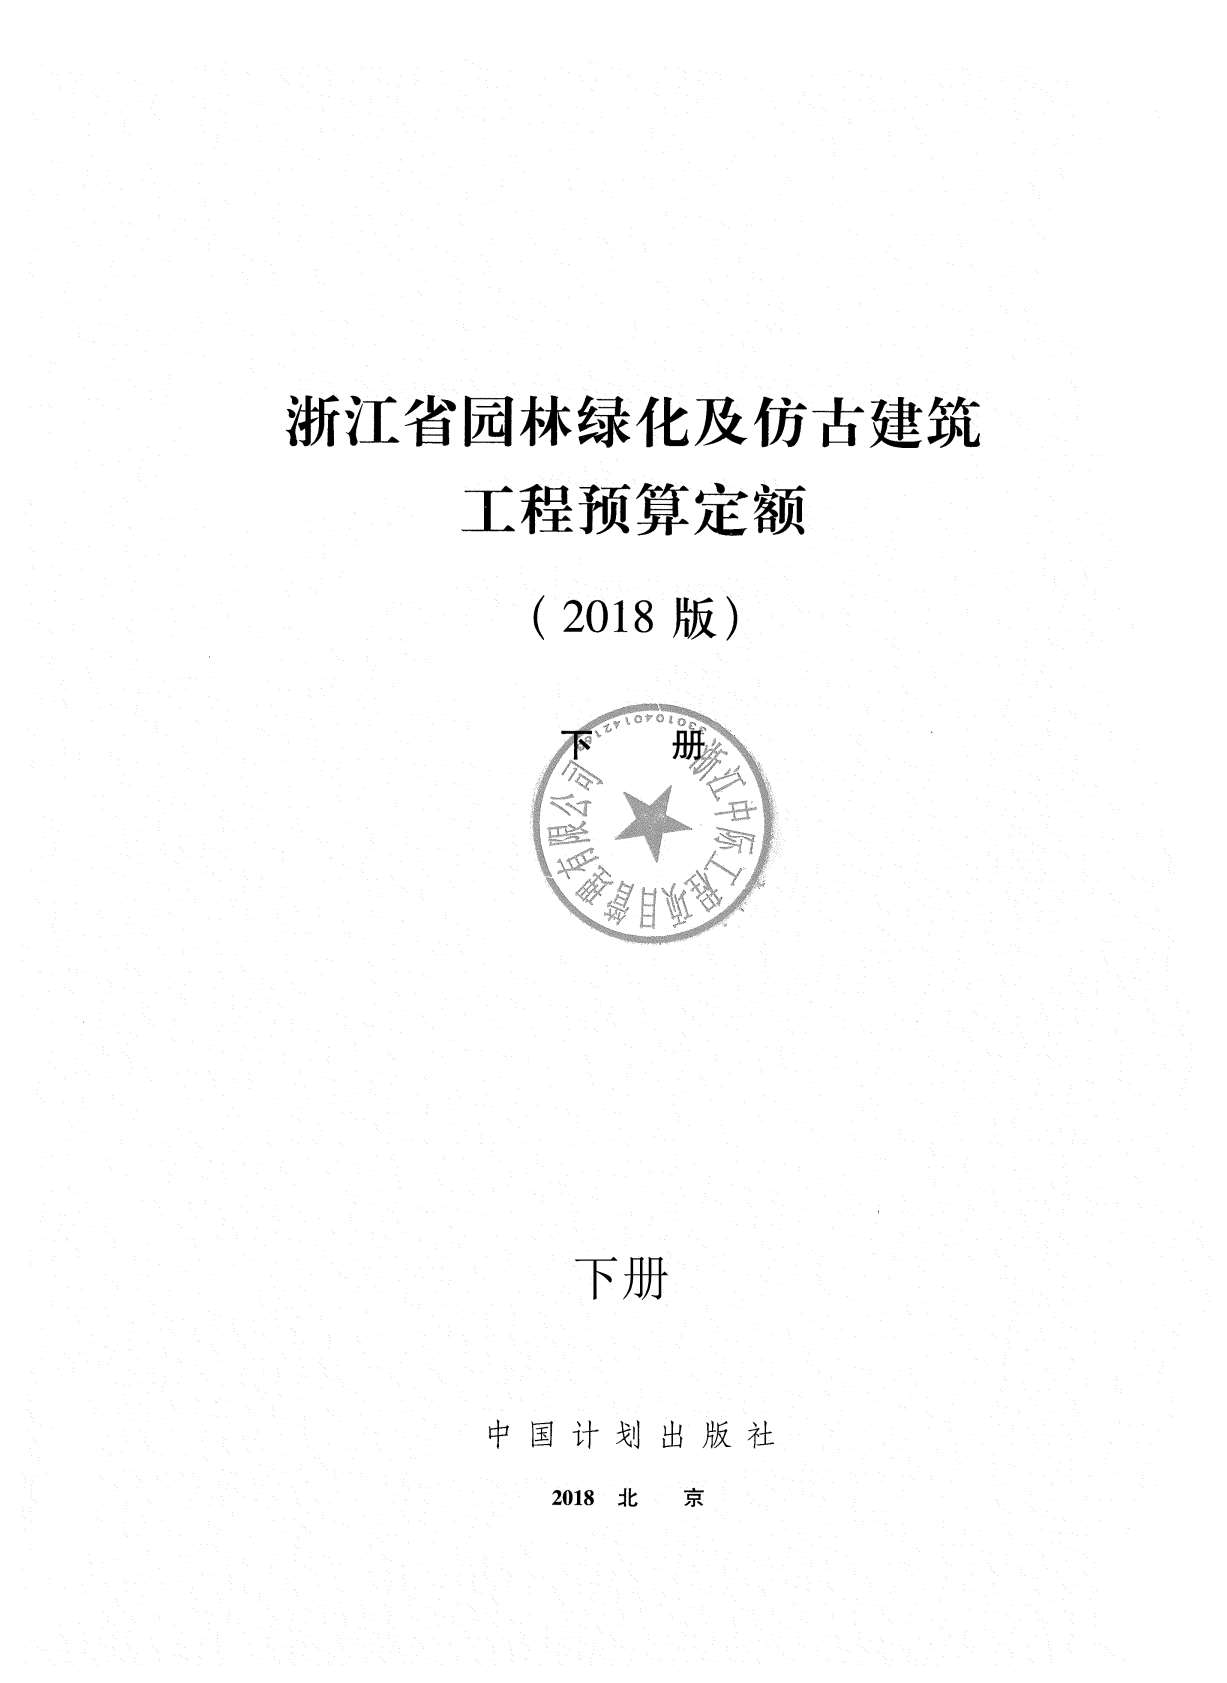 2018浙江省园林绿化及仿古建筑工程预算定额(下册)